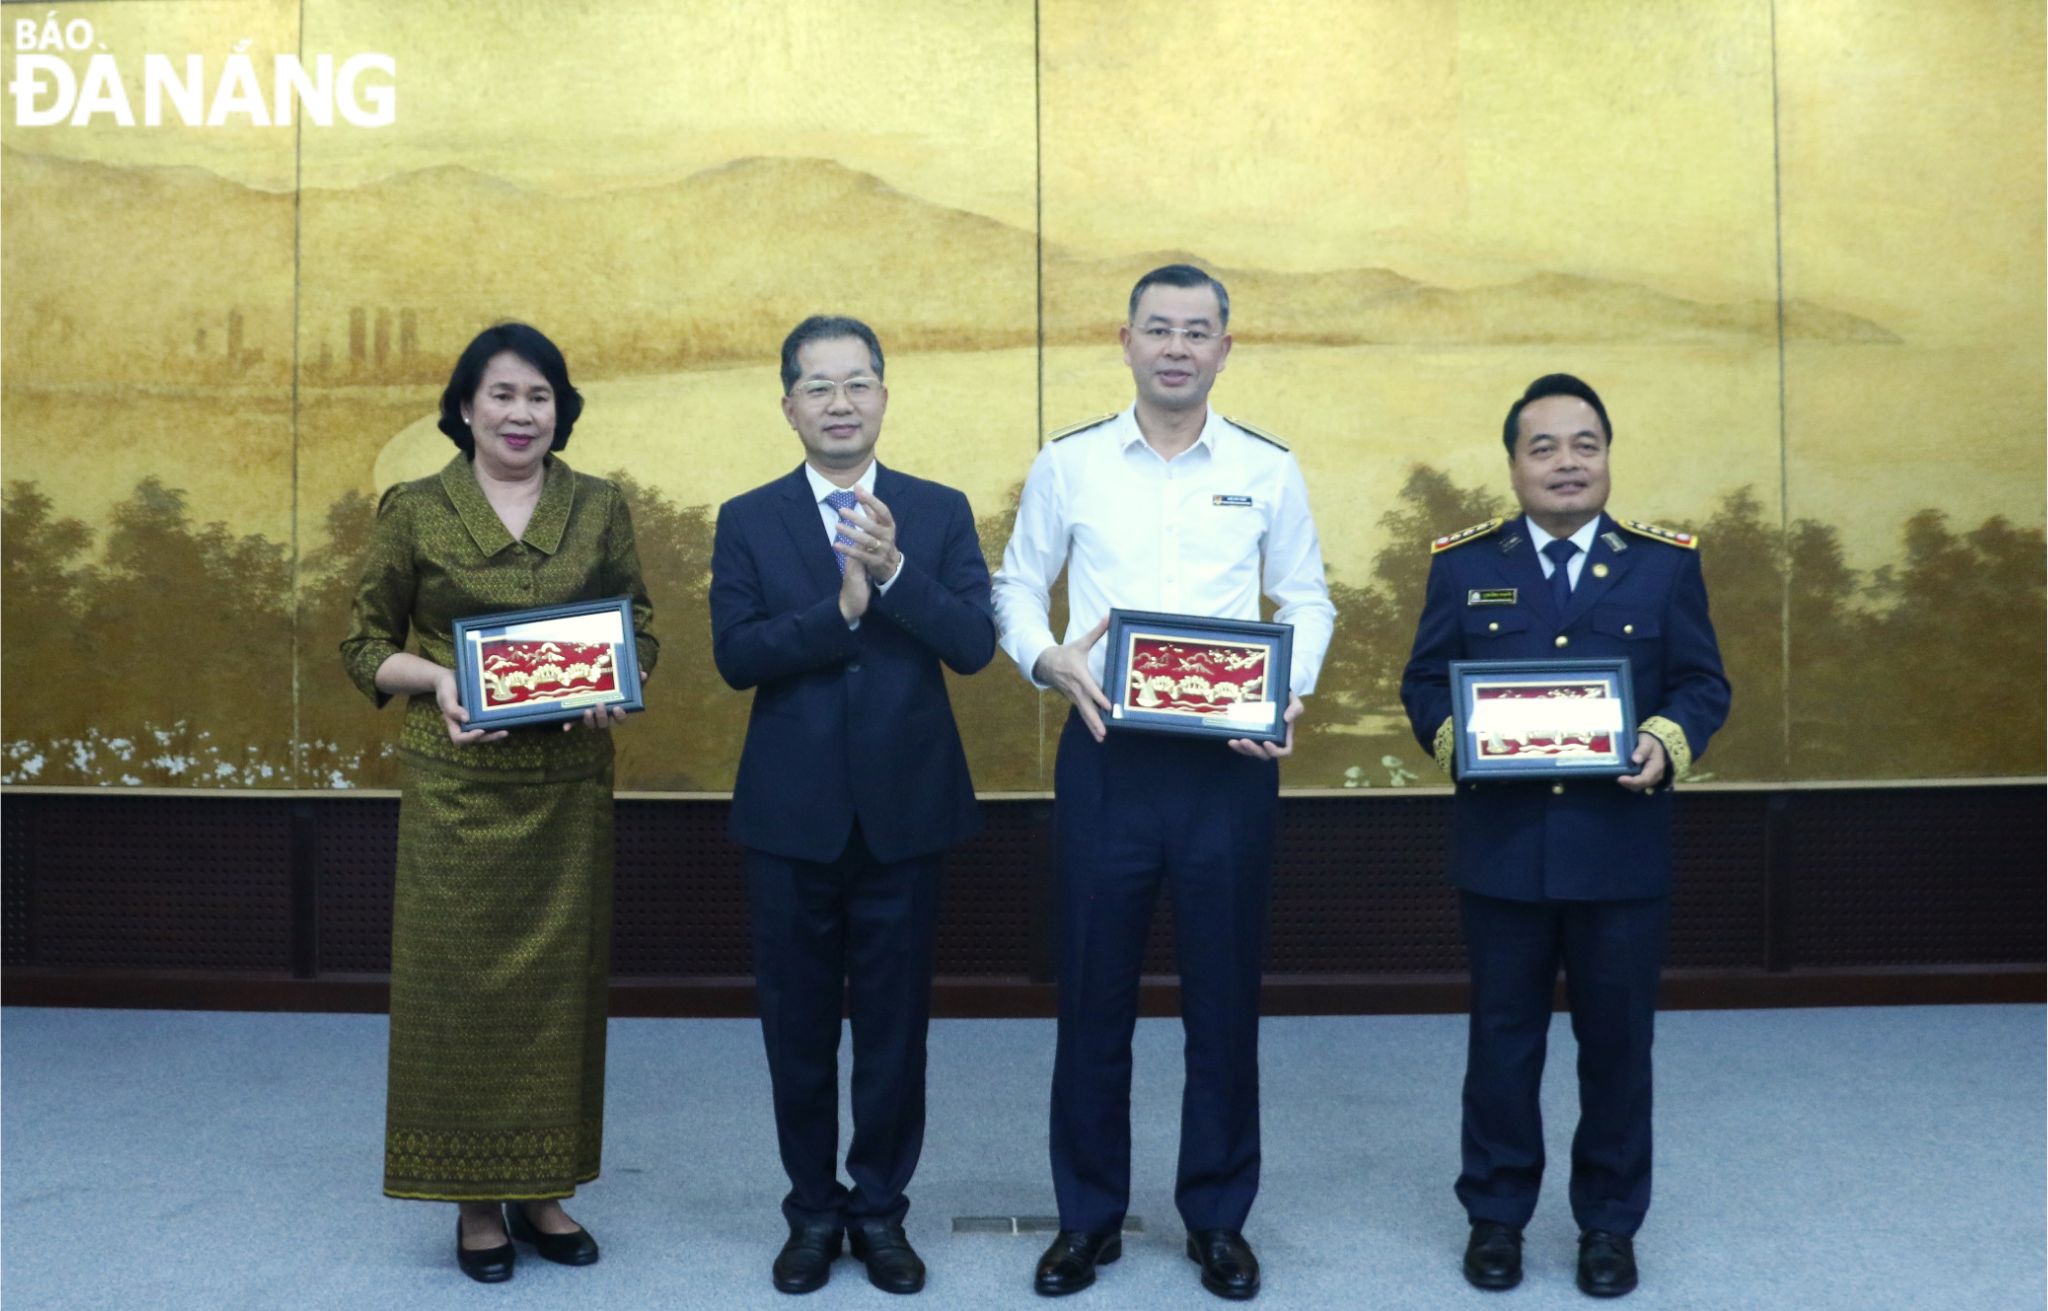 Bí thư Thành ủy Nguyễn Văn Quảng (thứ 2, từ trái sang) tặng quà lưu niệm đến 3 lãnh đạo Kiểm toán Nhà nước của Việt Nam, Lào và Campuchia. Ảnh: T.PHƯƠNG 